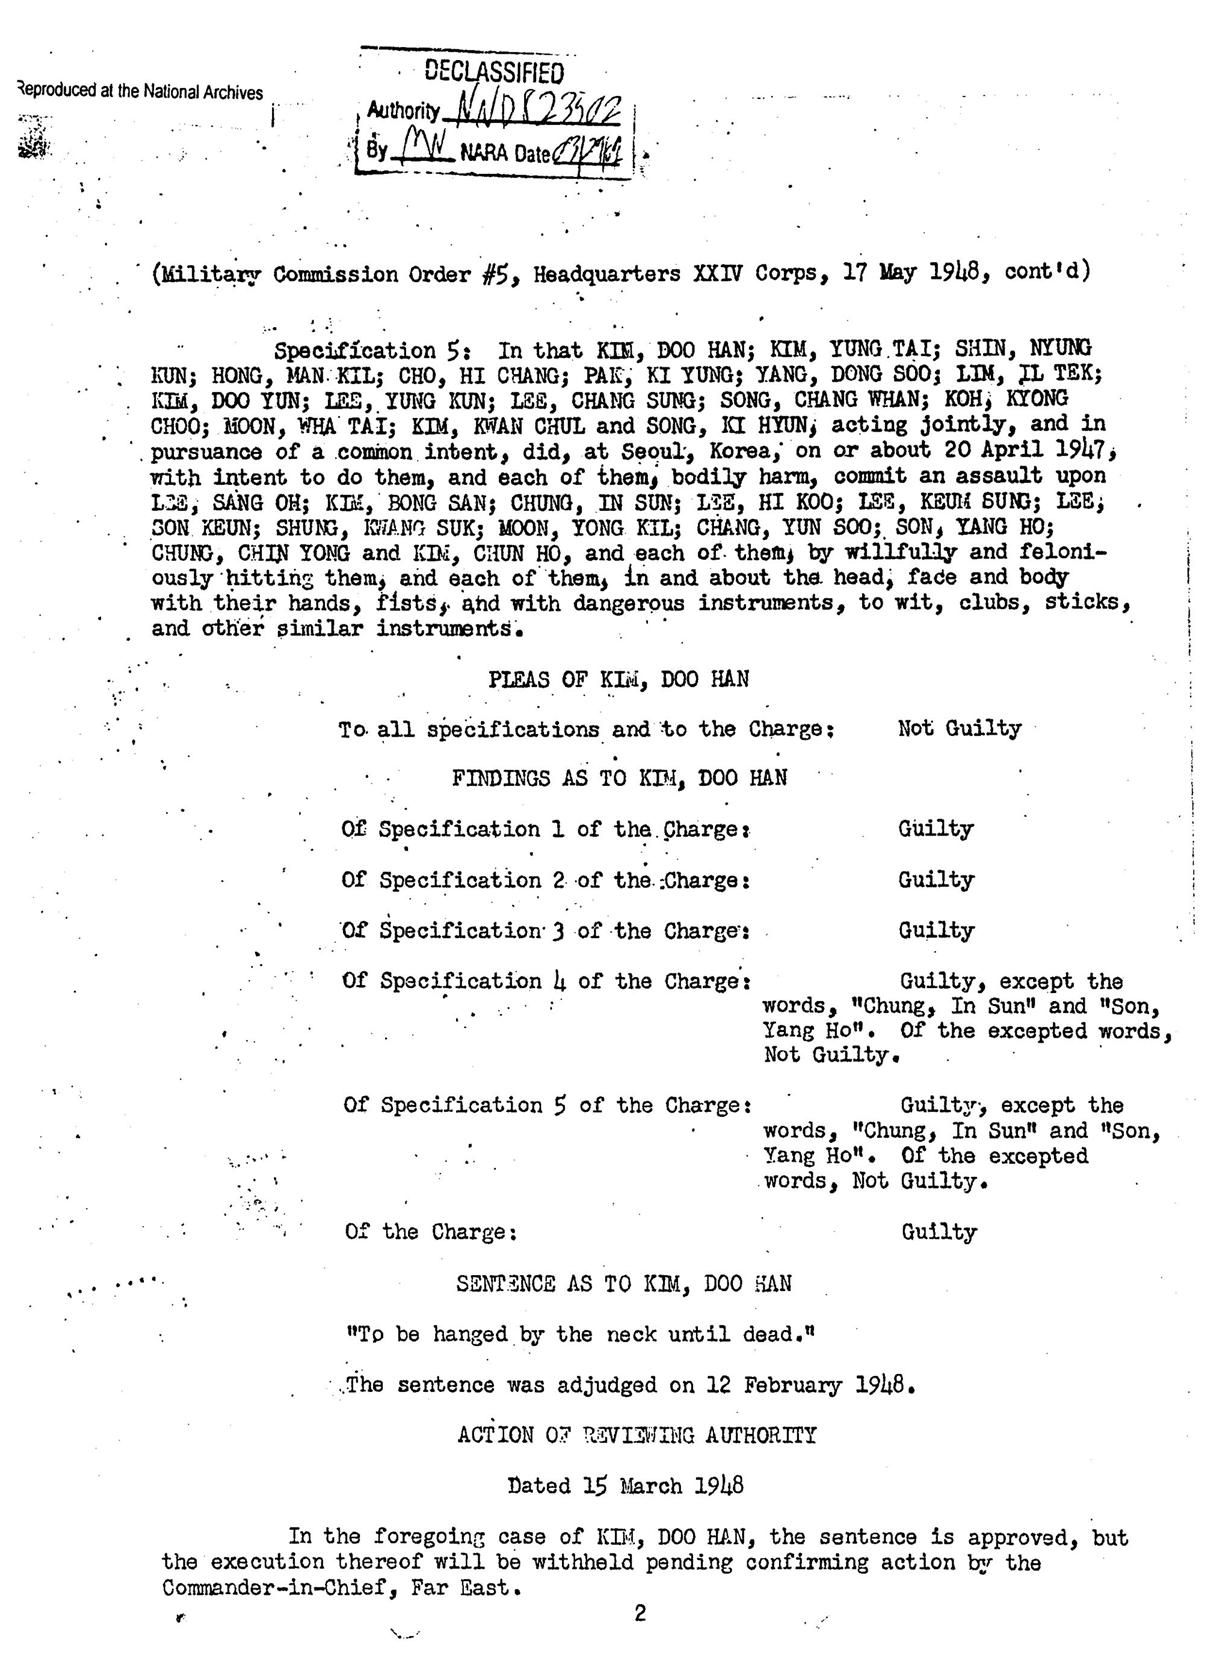 1948년 5월 17일자로 작성된 ‘미군정재판 군사위원회 명령 5번’